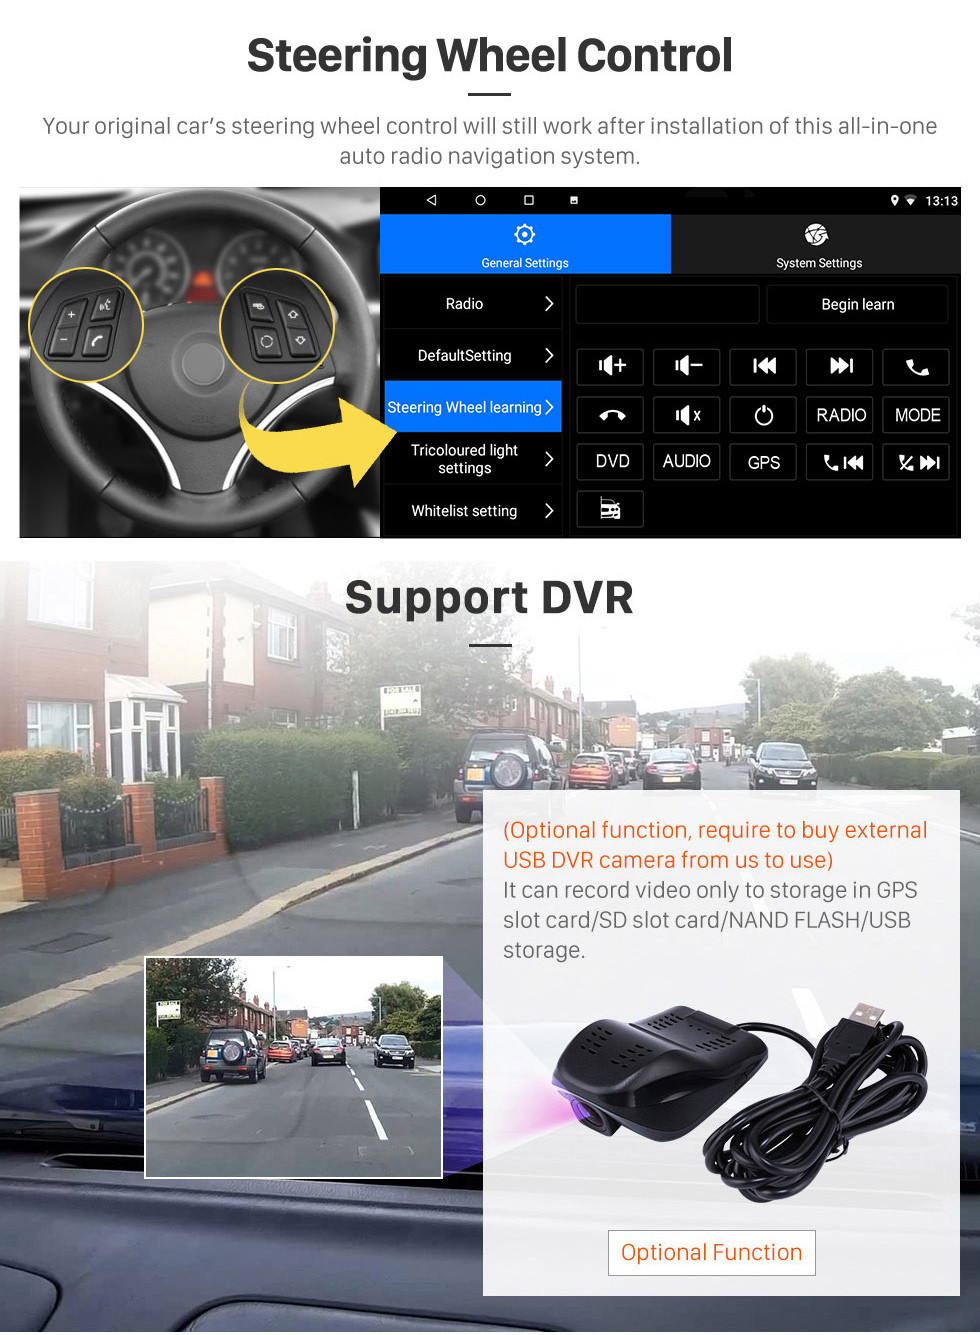 Seicane 2007-2012 Chevy Chevrolet Epica Android 10.0 HD à écran tactile 9 pouces WIFI Bluetooth Navigation GPS Navigation SWC Carplay